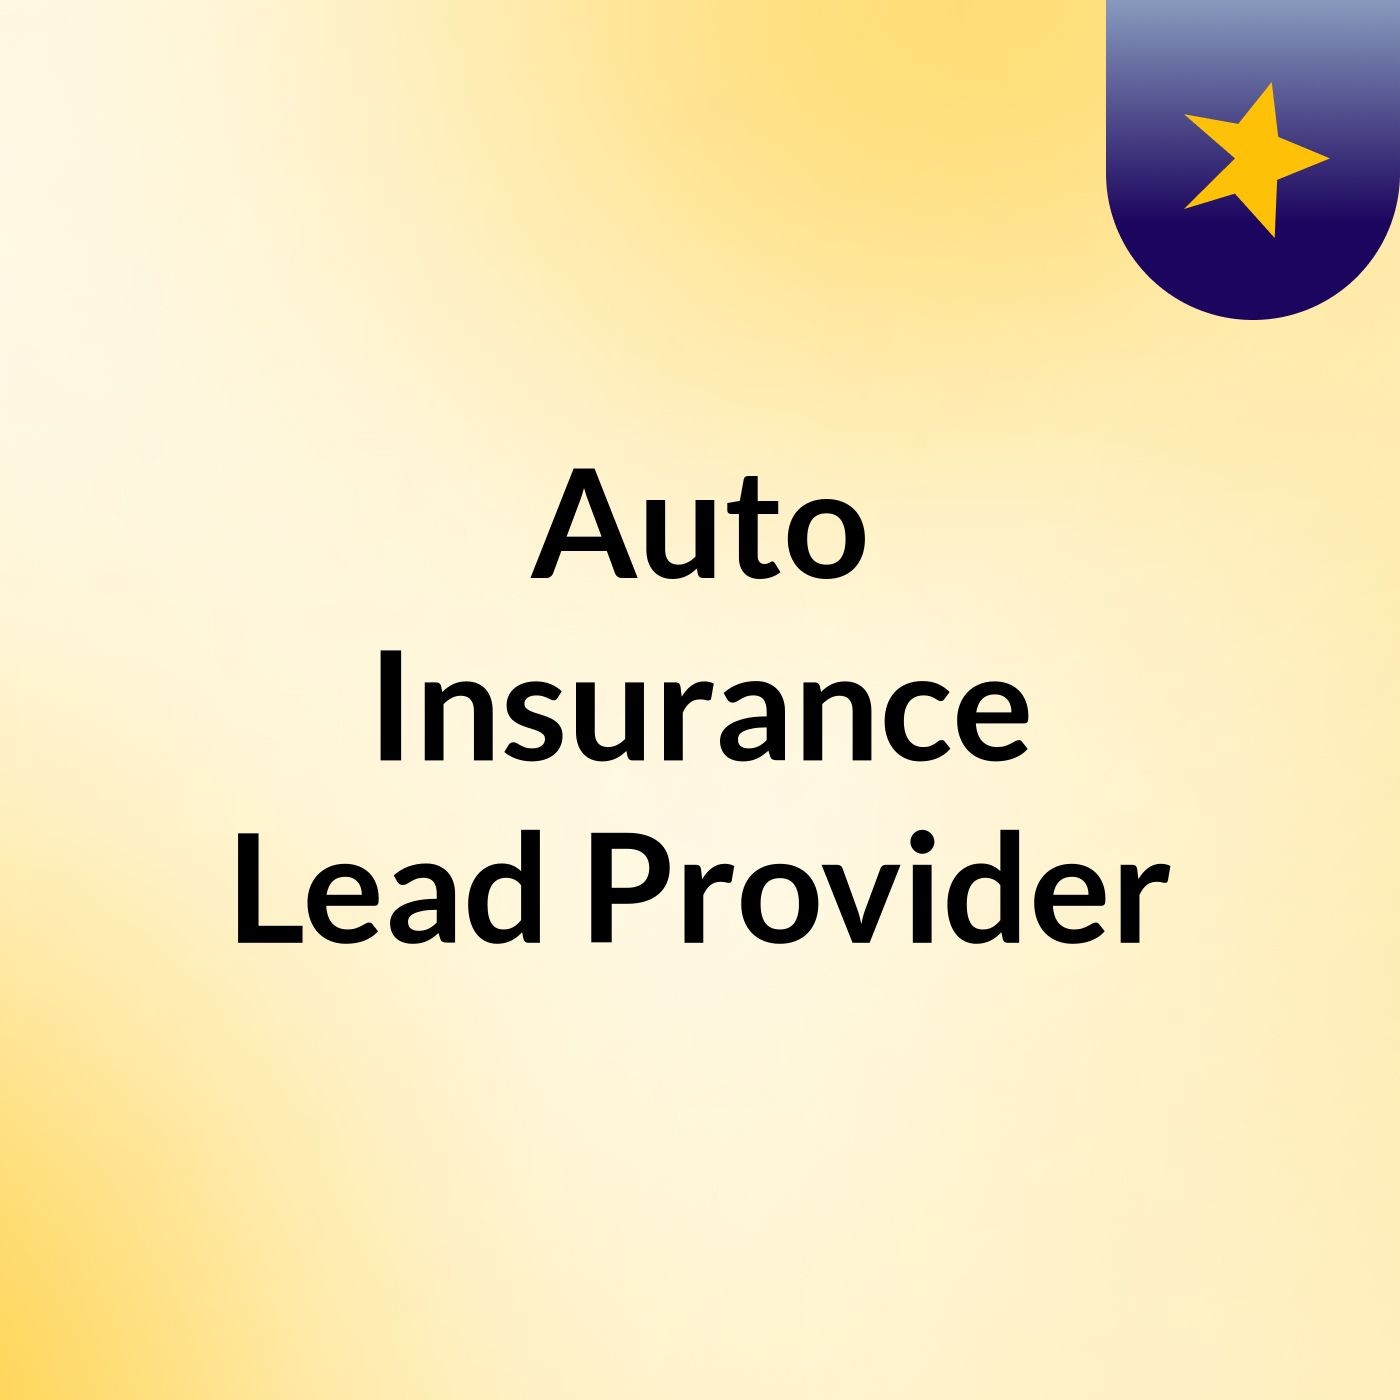 Auto Insurance Lead Provider